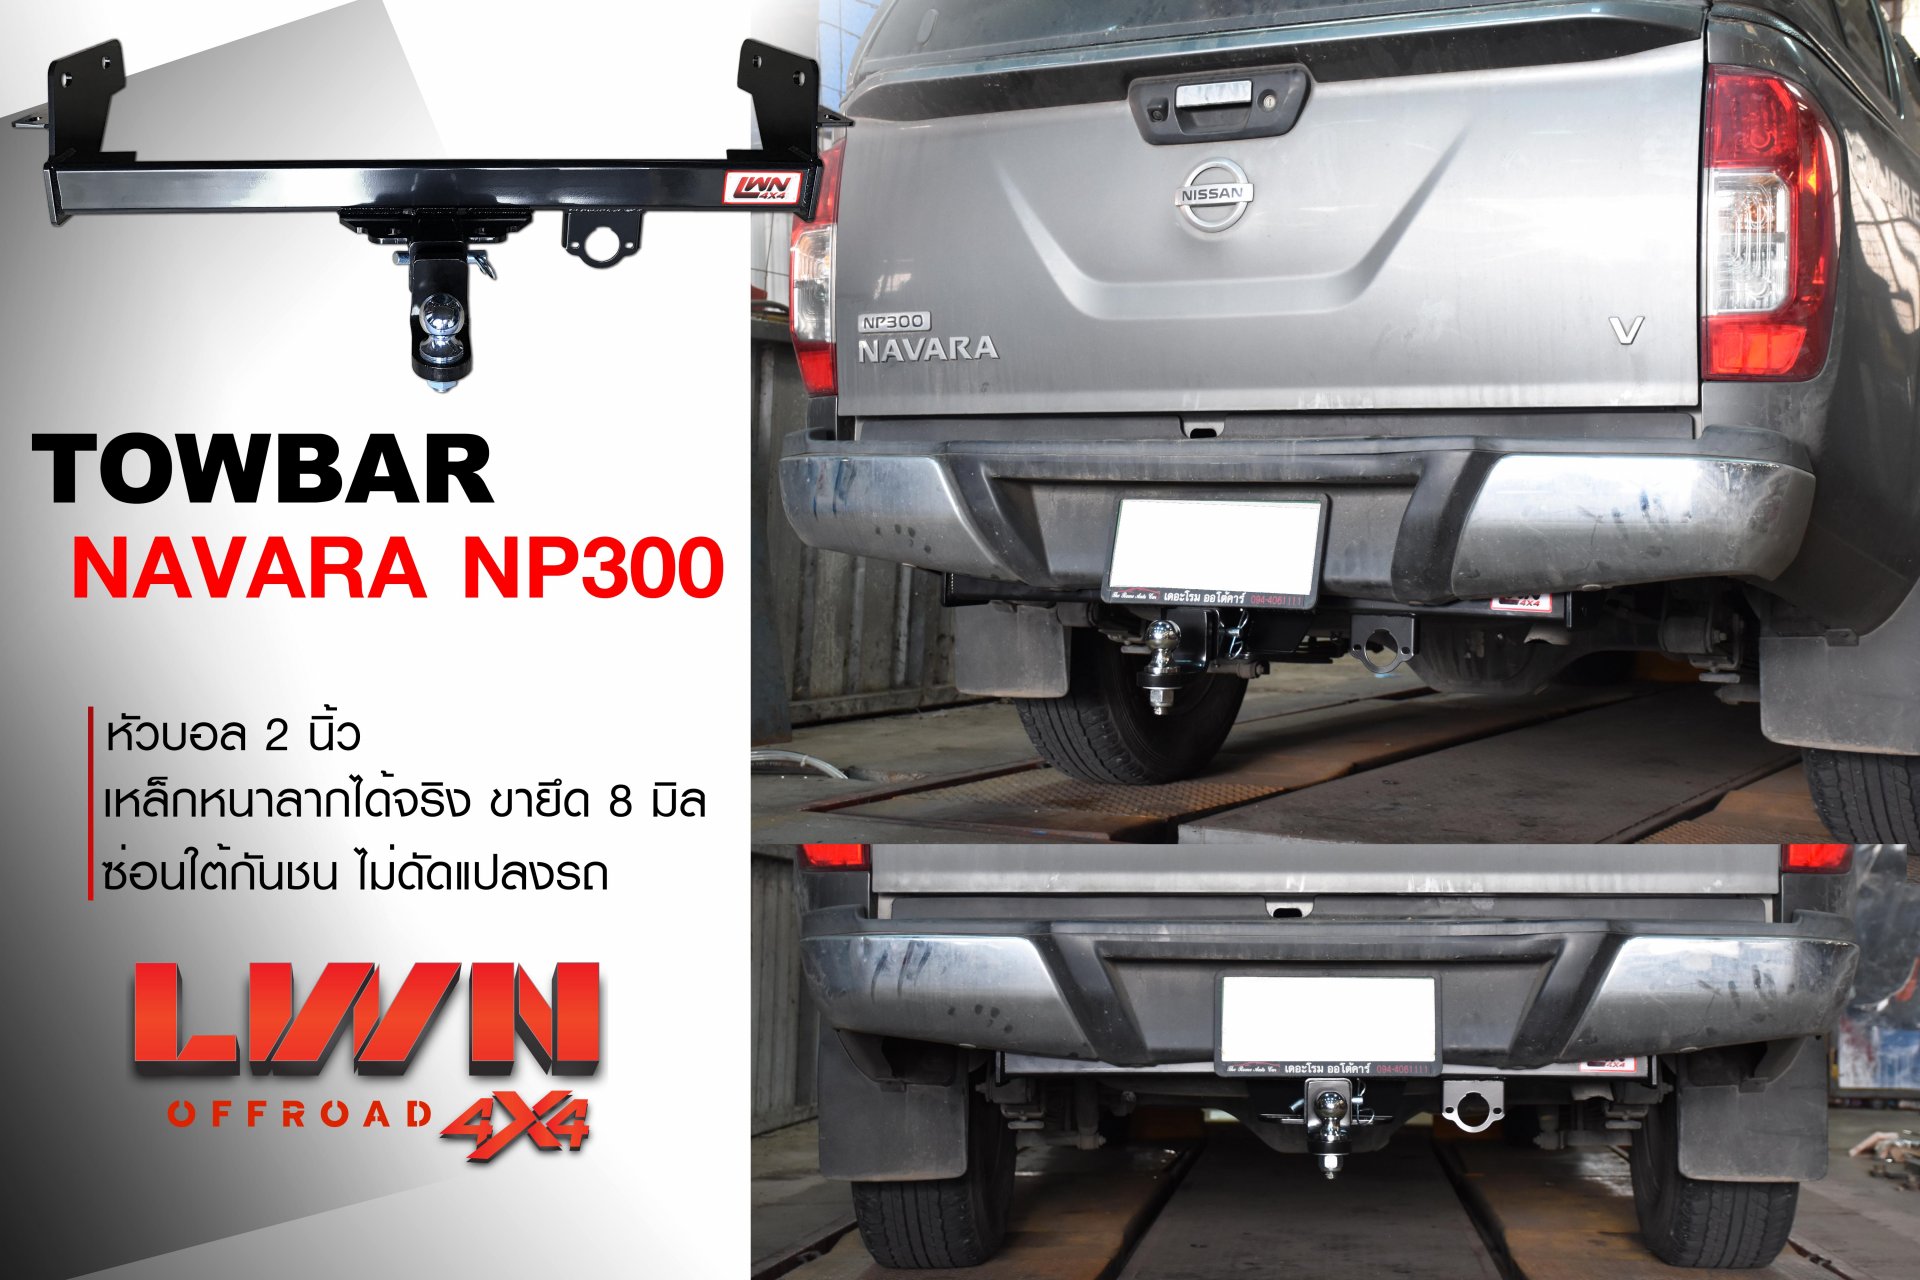 Towbar Nissan Navara NP300